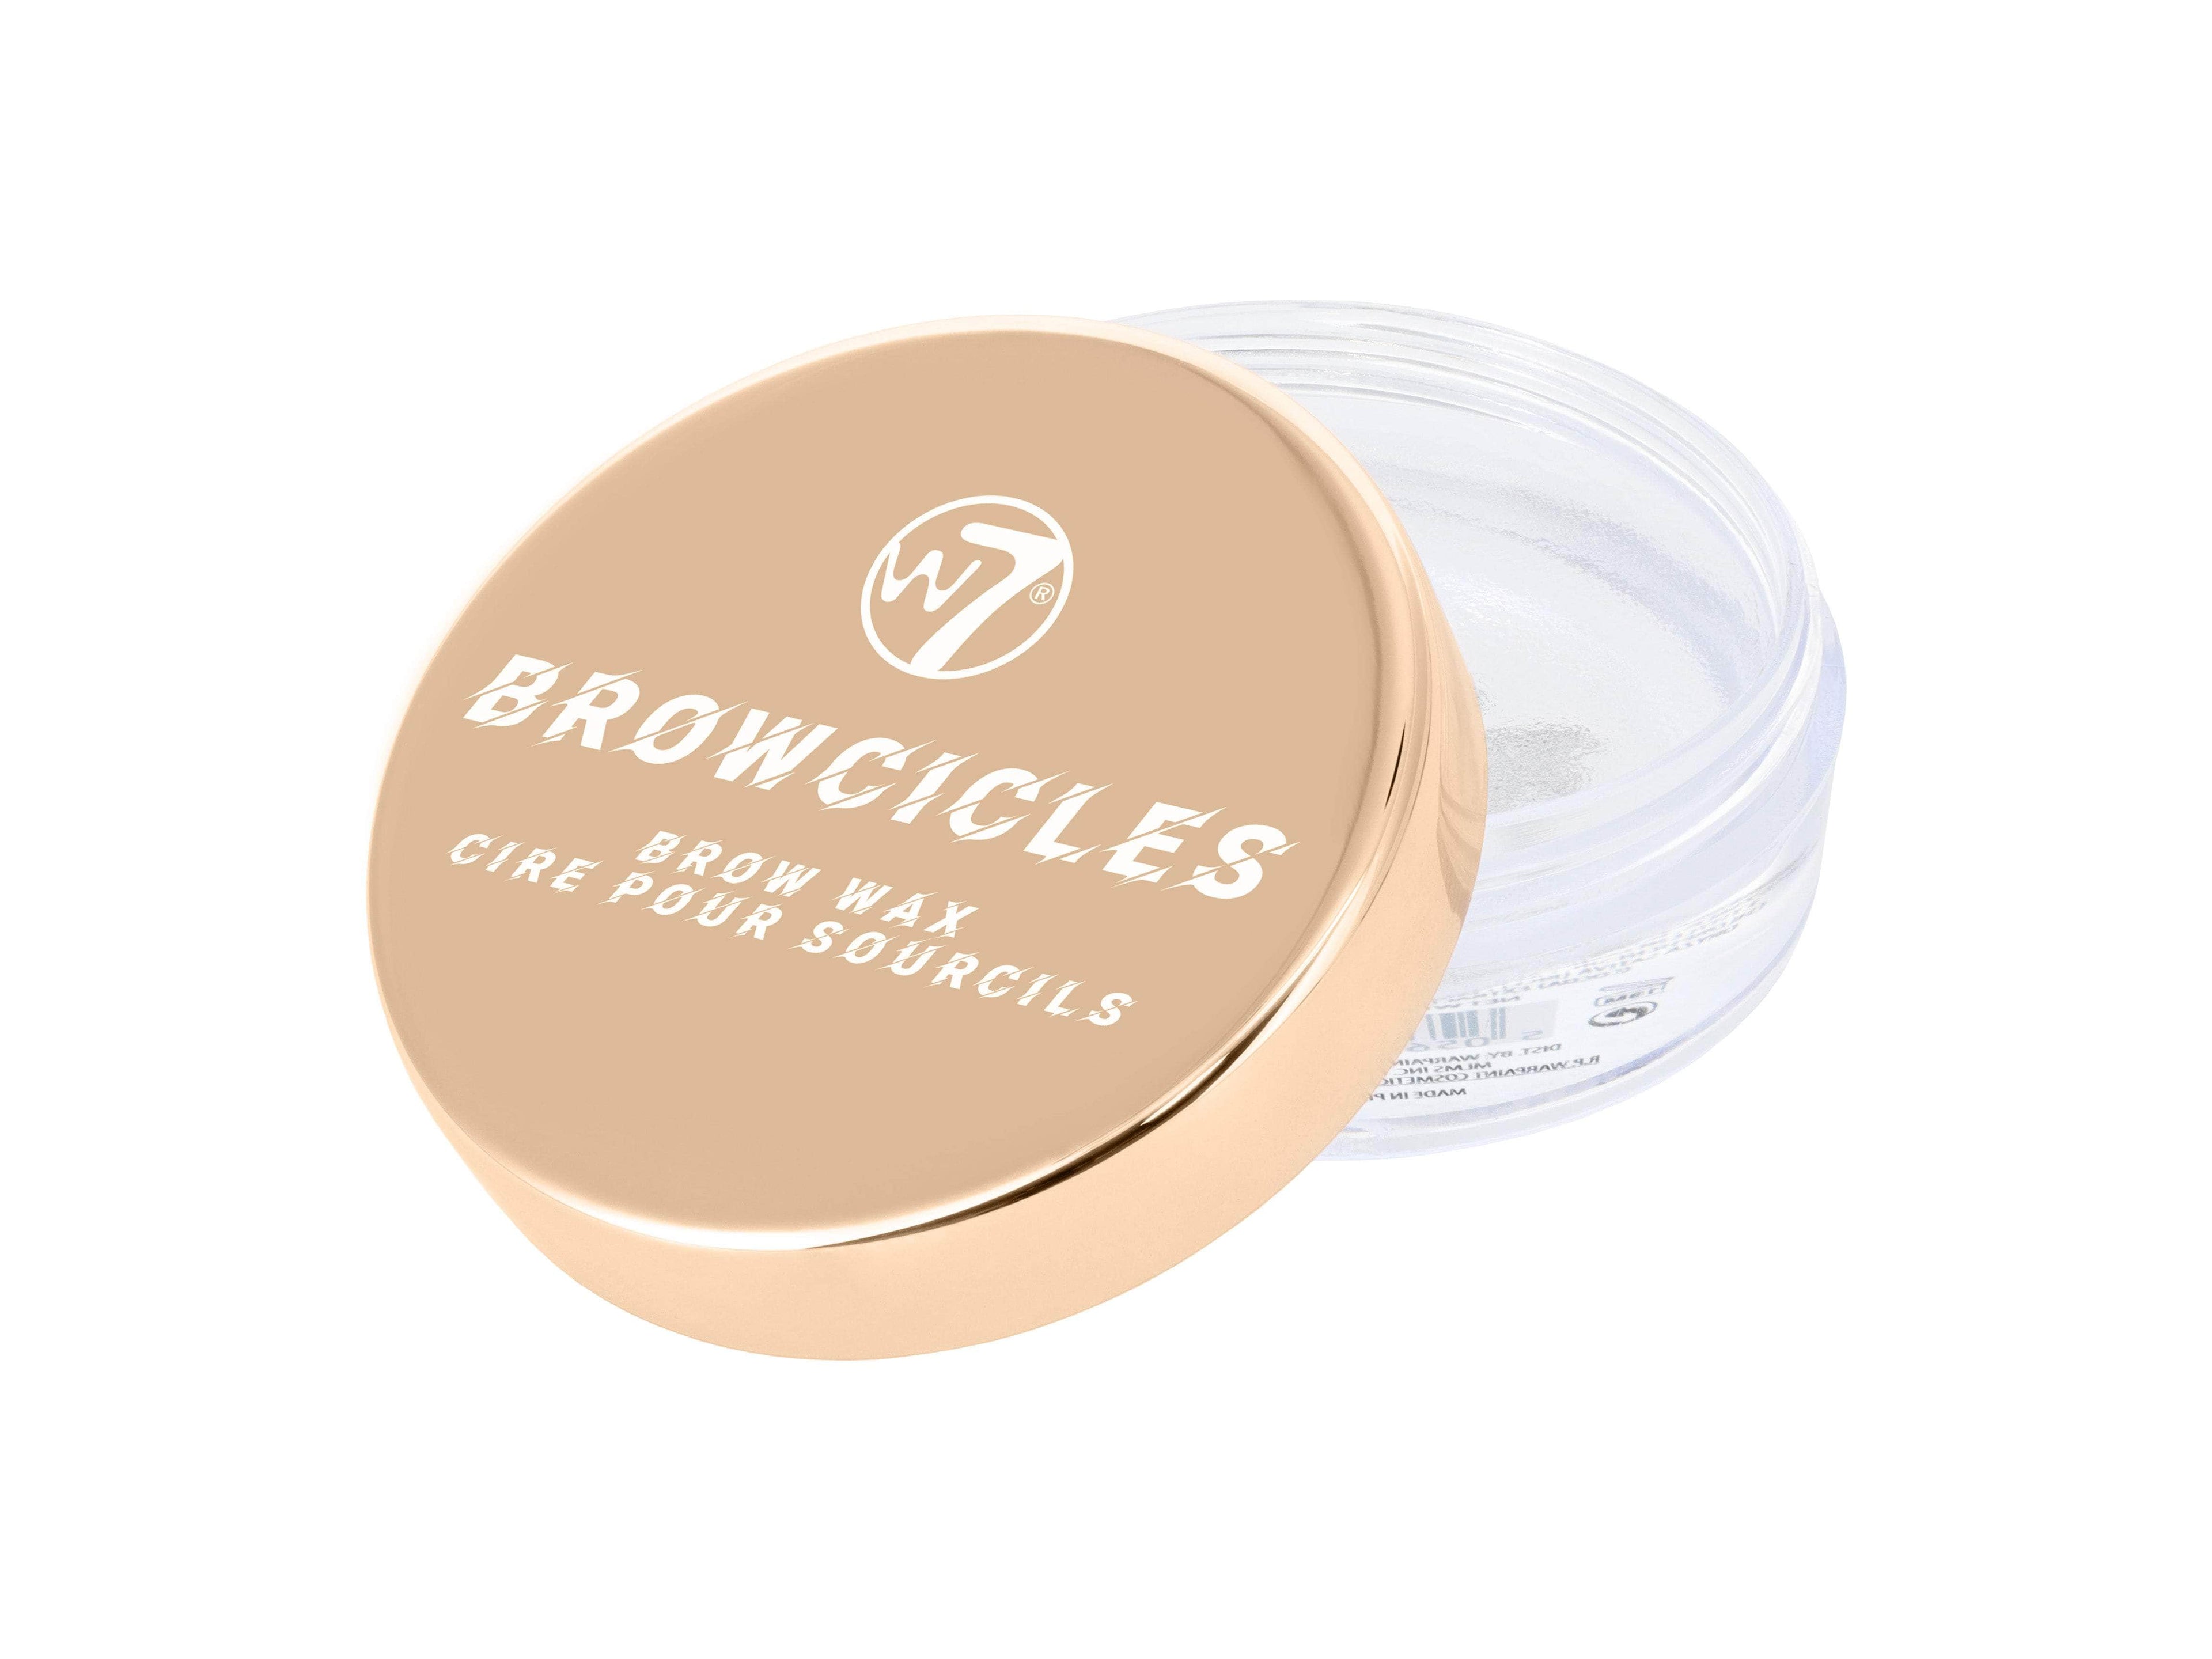 W7 Browcicles brow wax